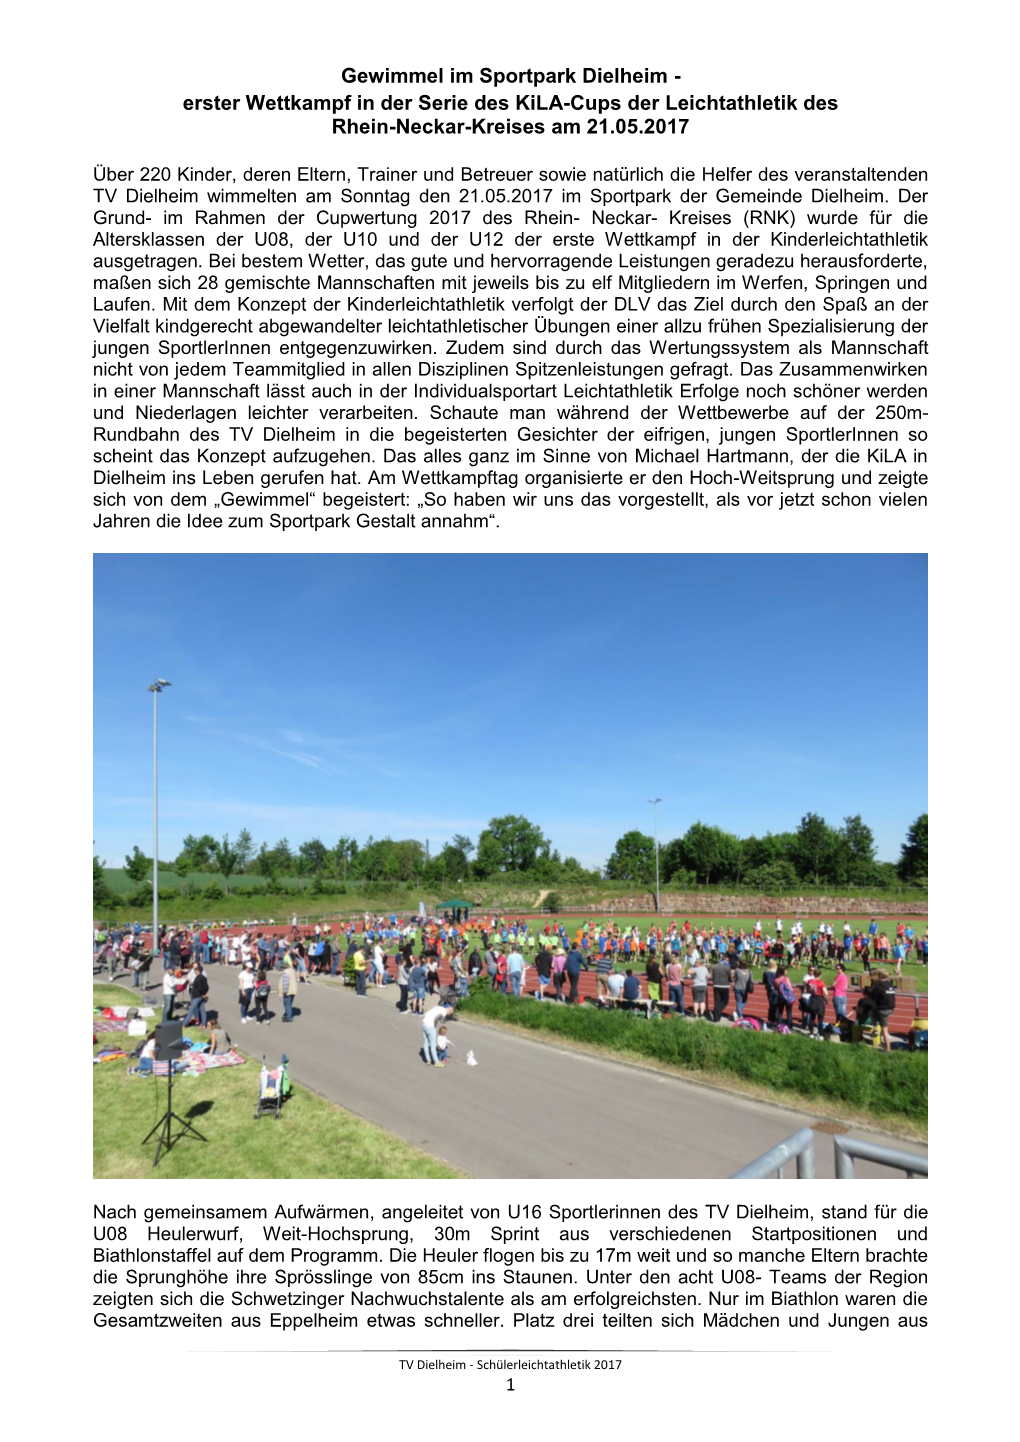 Gewimmel Im Sportpark Dielheim - Erster Wettkampf in Der Serie Des Kila-Cups Der Leichtathletik Des Rhein-Neckar-Kreises Am 21.05.2017